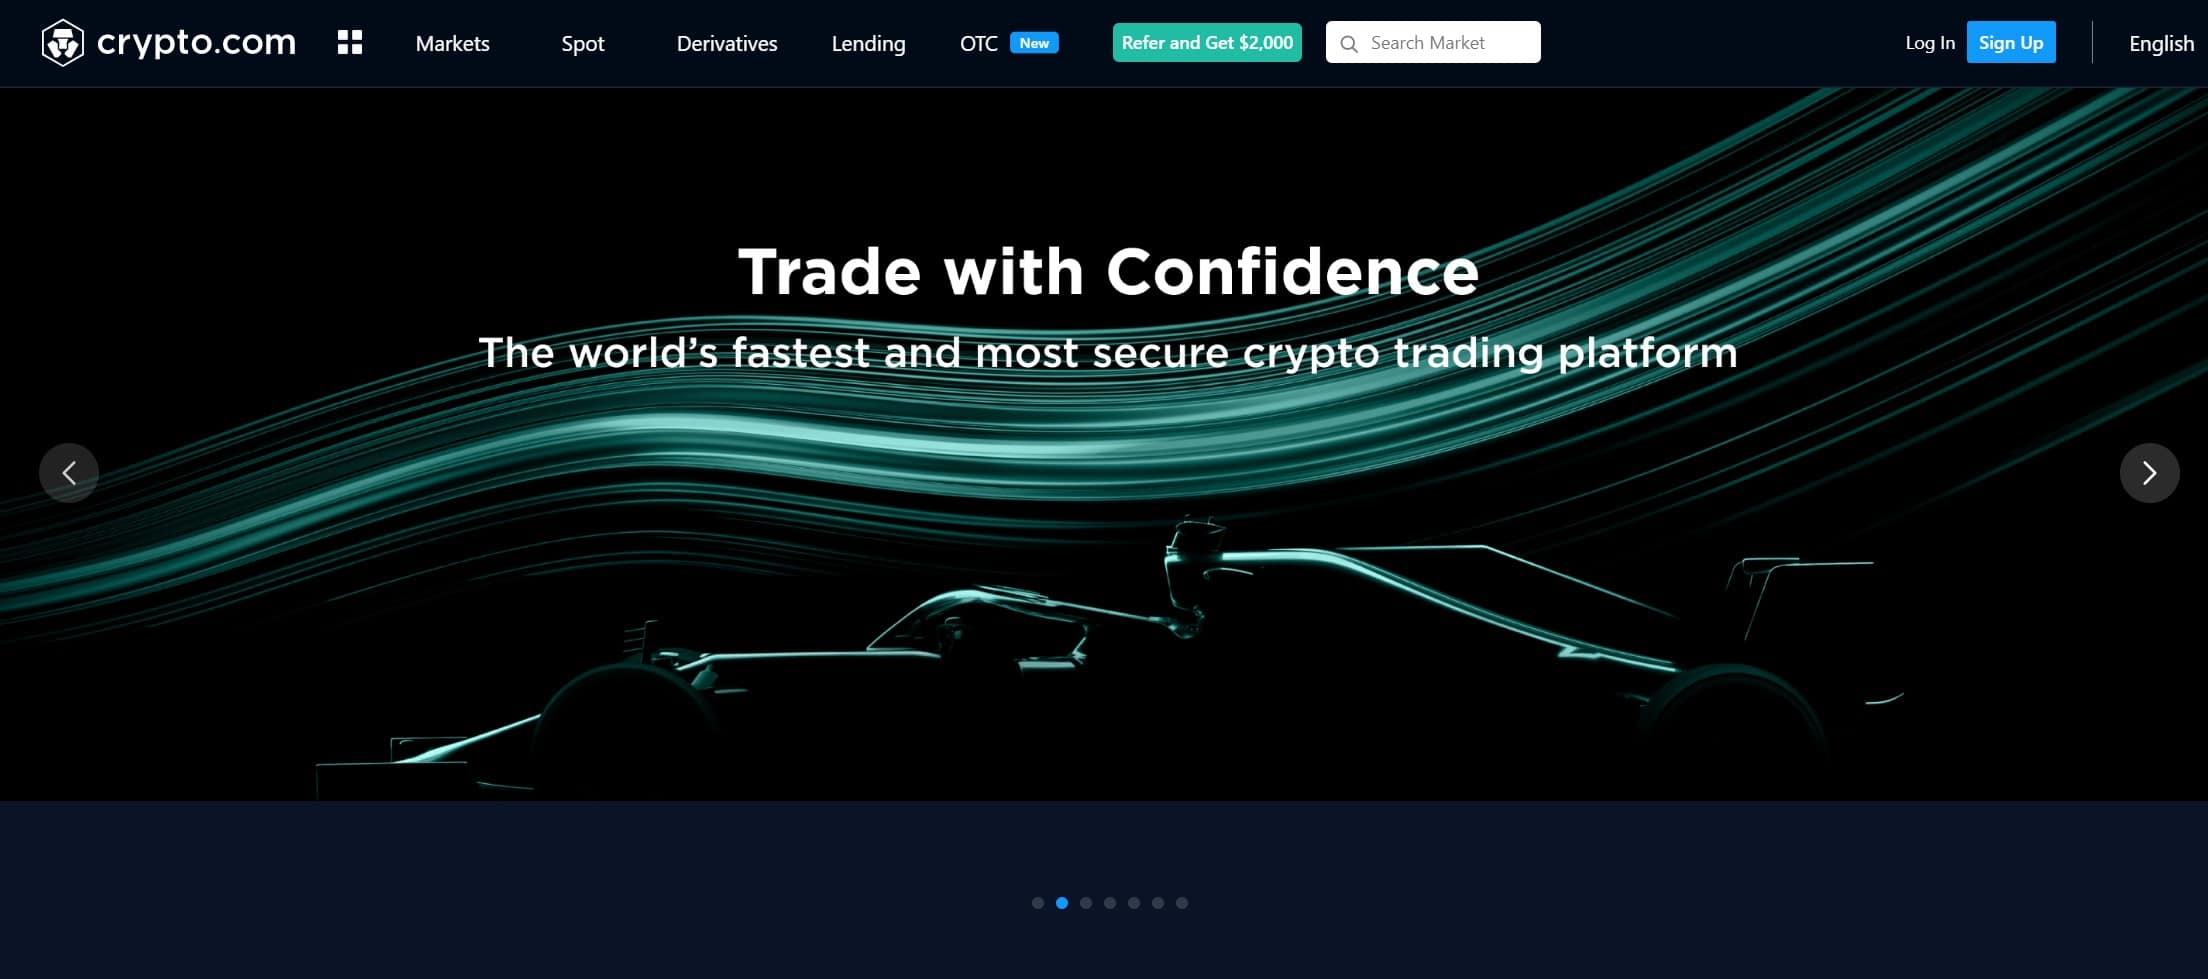 الصفحة الرئيسية لتبادل crypto.com